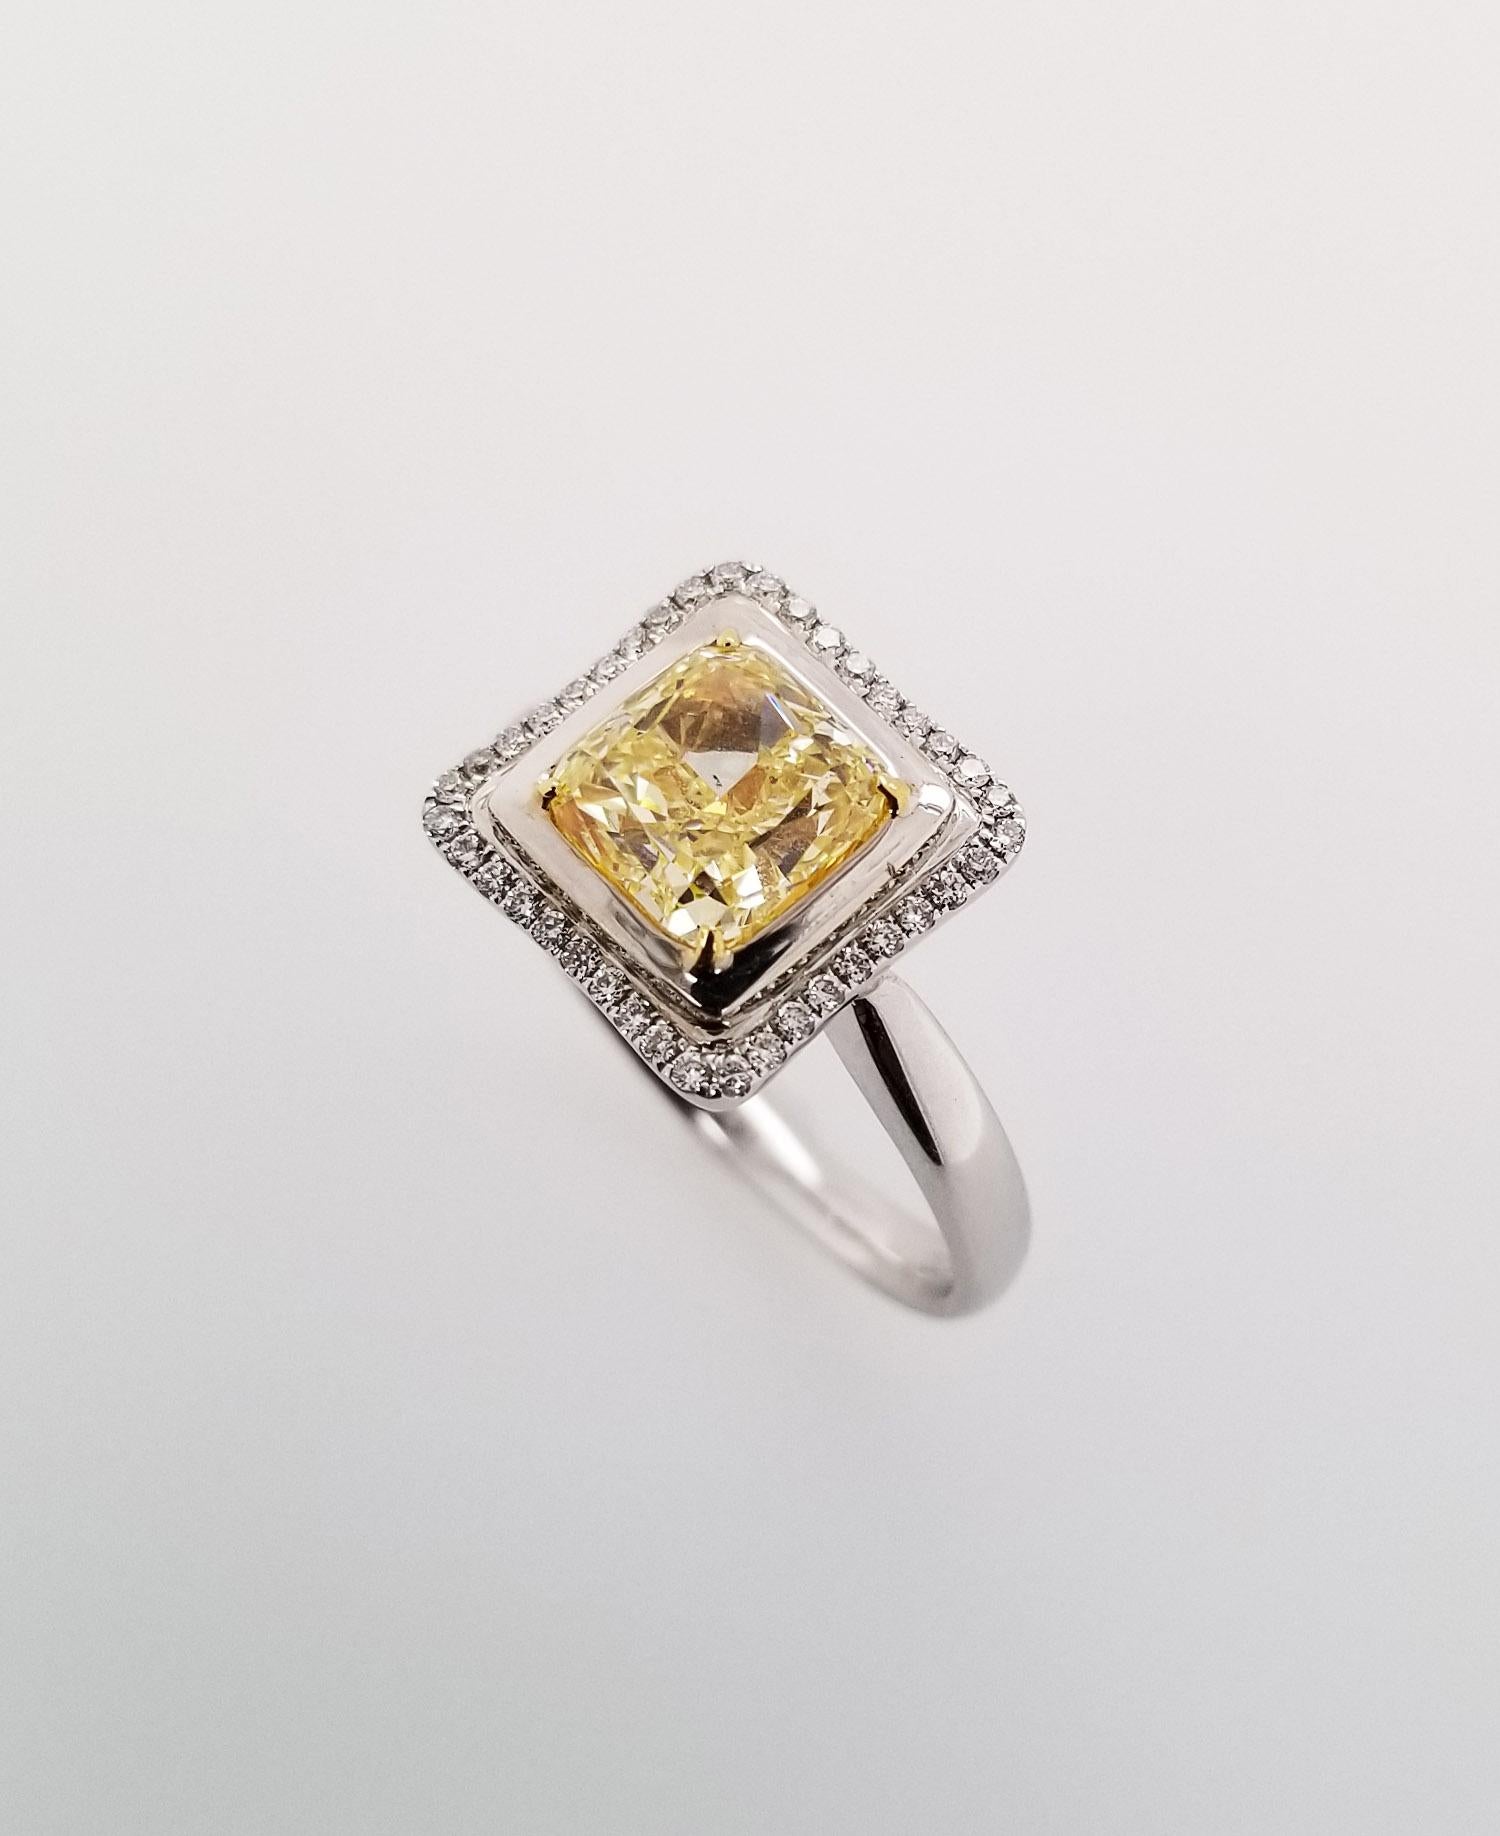 2,02 Karat Fancy Yellow GIA-zertifizierter Diamant-Verlobungsring mit Strahlenschliff SI1 und 18 Karat Weißgold. Halo-Fassung mit einer Reihe von weißen Diamanten im Rundschliff, TCW 0,13. Auf Anfrage anpassbar.

Dieser bemerkenswerte Verlobungsring